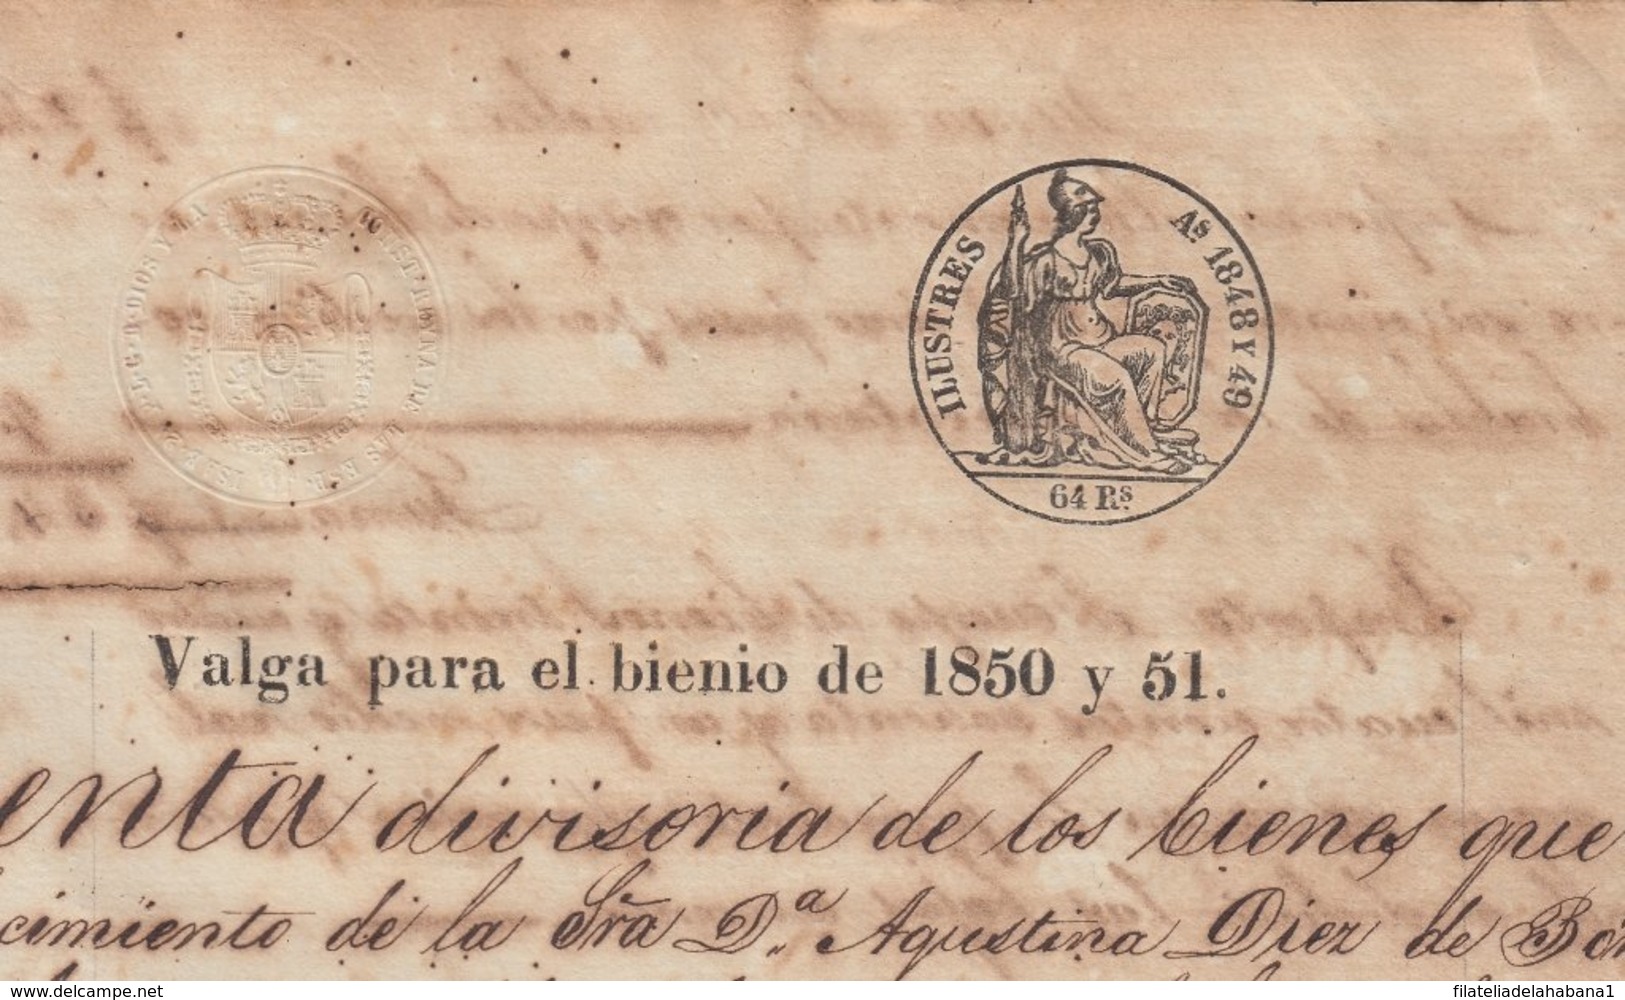 1850-PS-74 SPAIN ANTILLES CUBA REVENUE SEALLED PAPER. HABILITADO PARA 1850-51. SELLO ILUSTRES. - Timbres-taxe